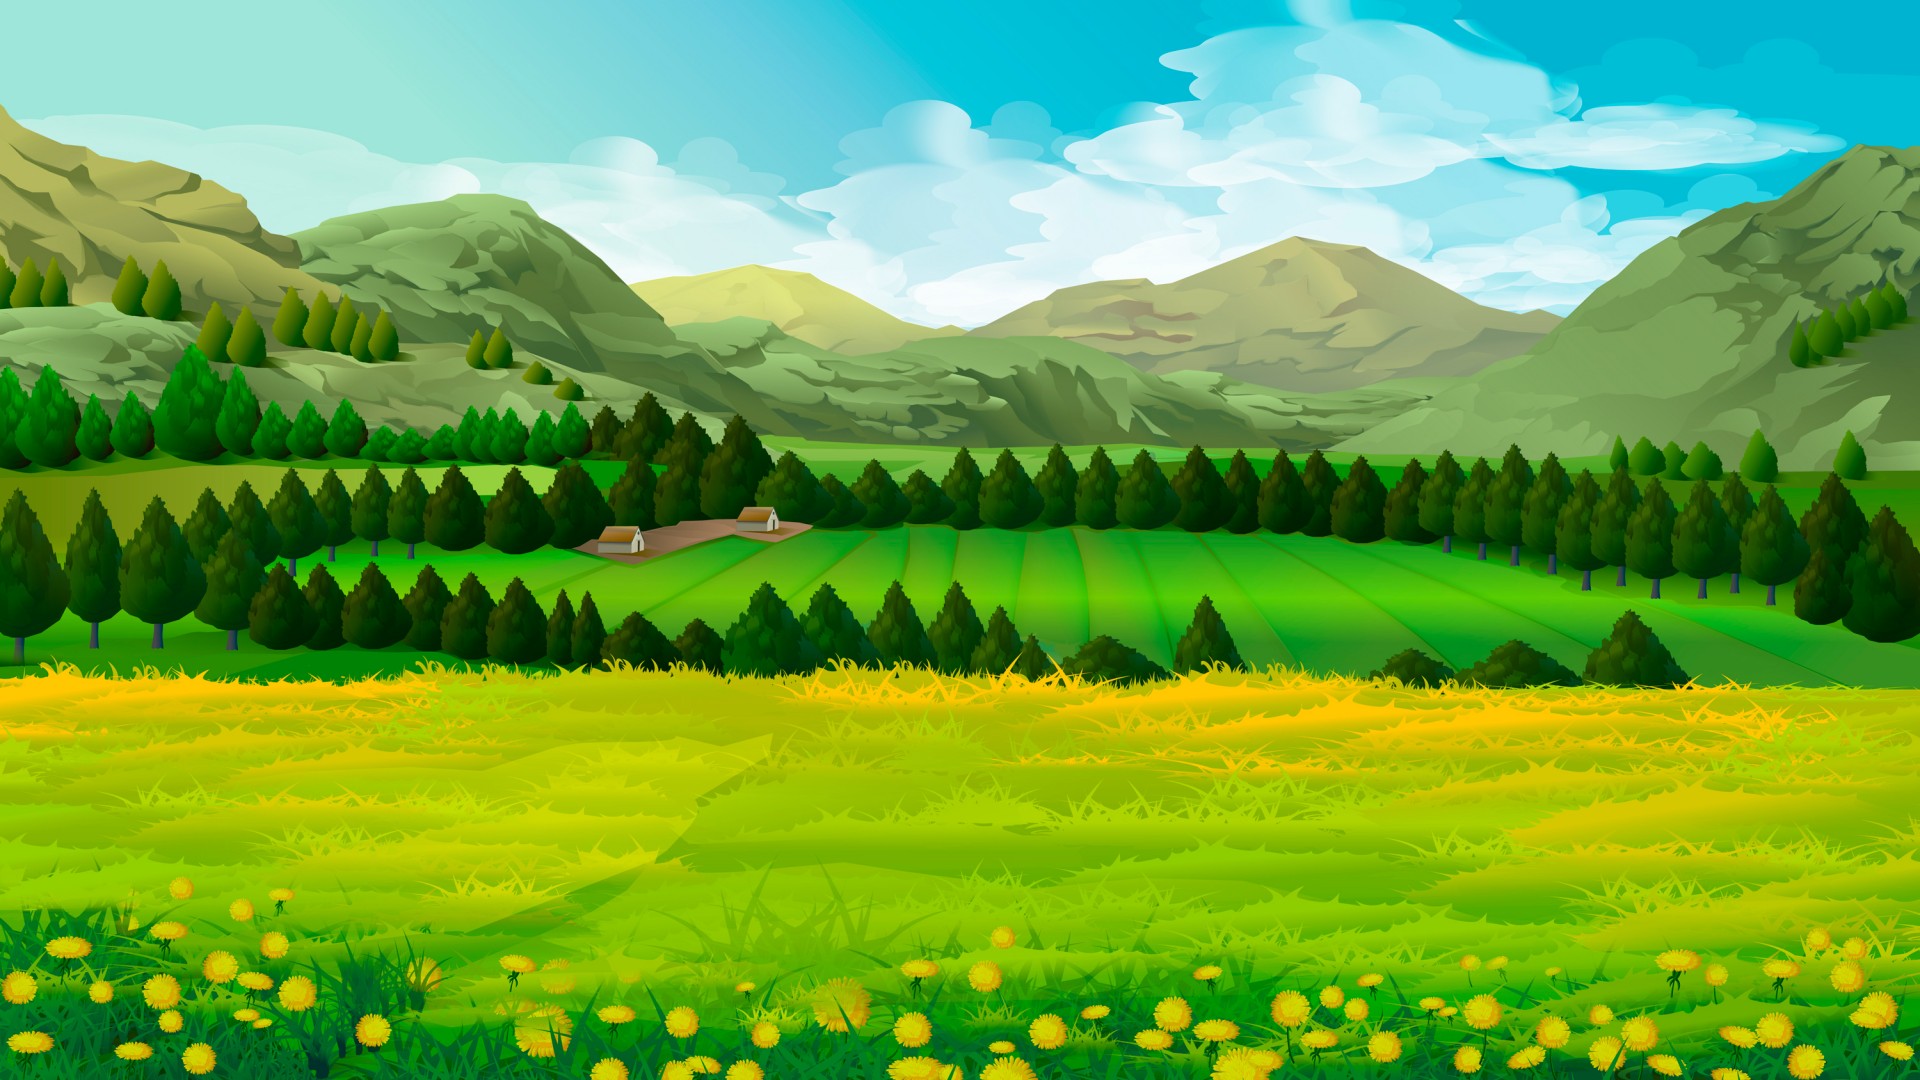 草甸，蒲公英，树木，山，风景，精美绘画桌面壁纸